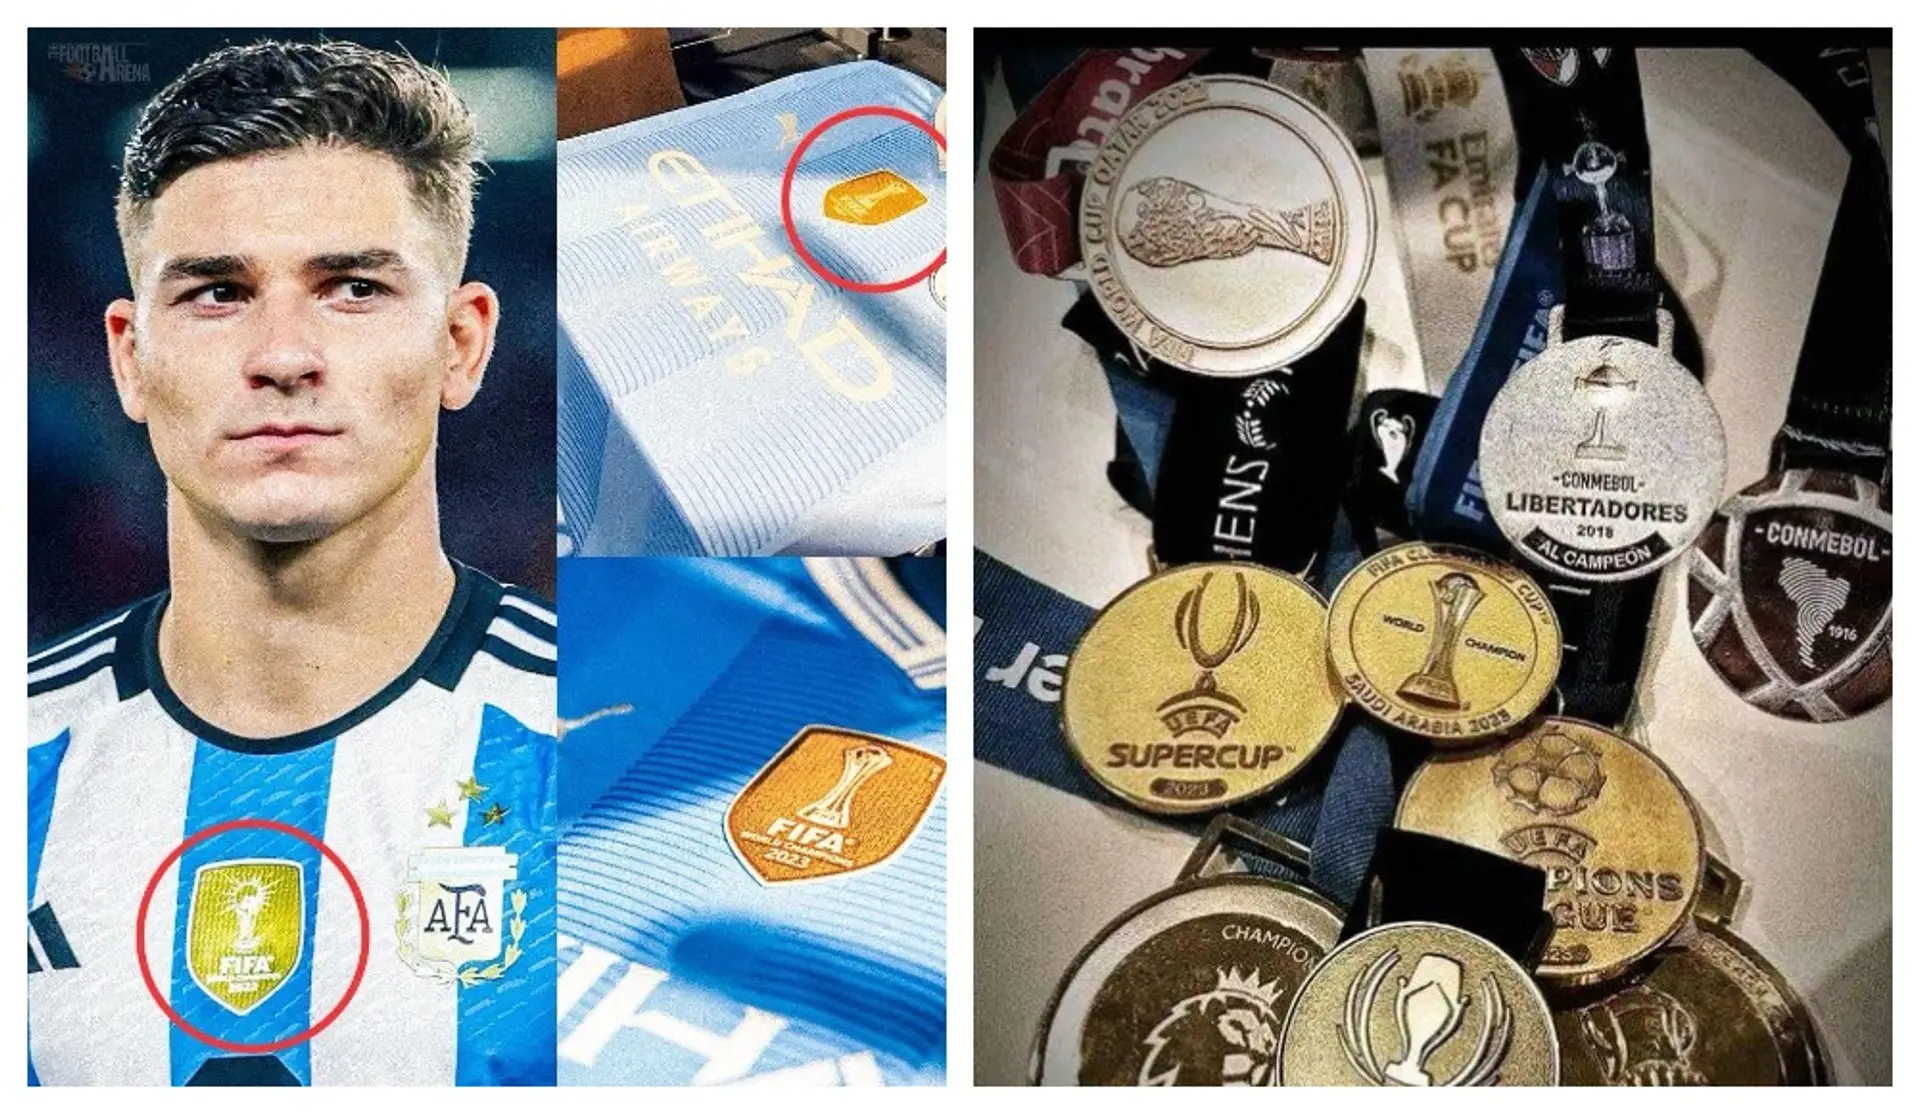 Julian Alvarez hat mit seinen 23 Jahren schon alles gewonnen: Außerdem hat er eine Leistung, die kein anderer Fußballer auf der Welt vorweisen kann